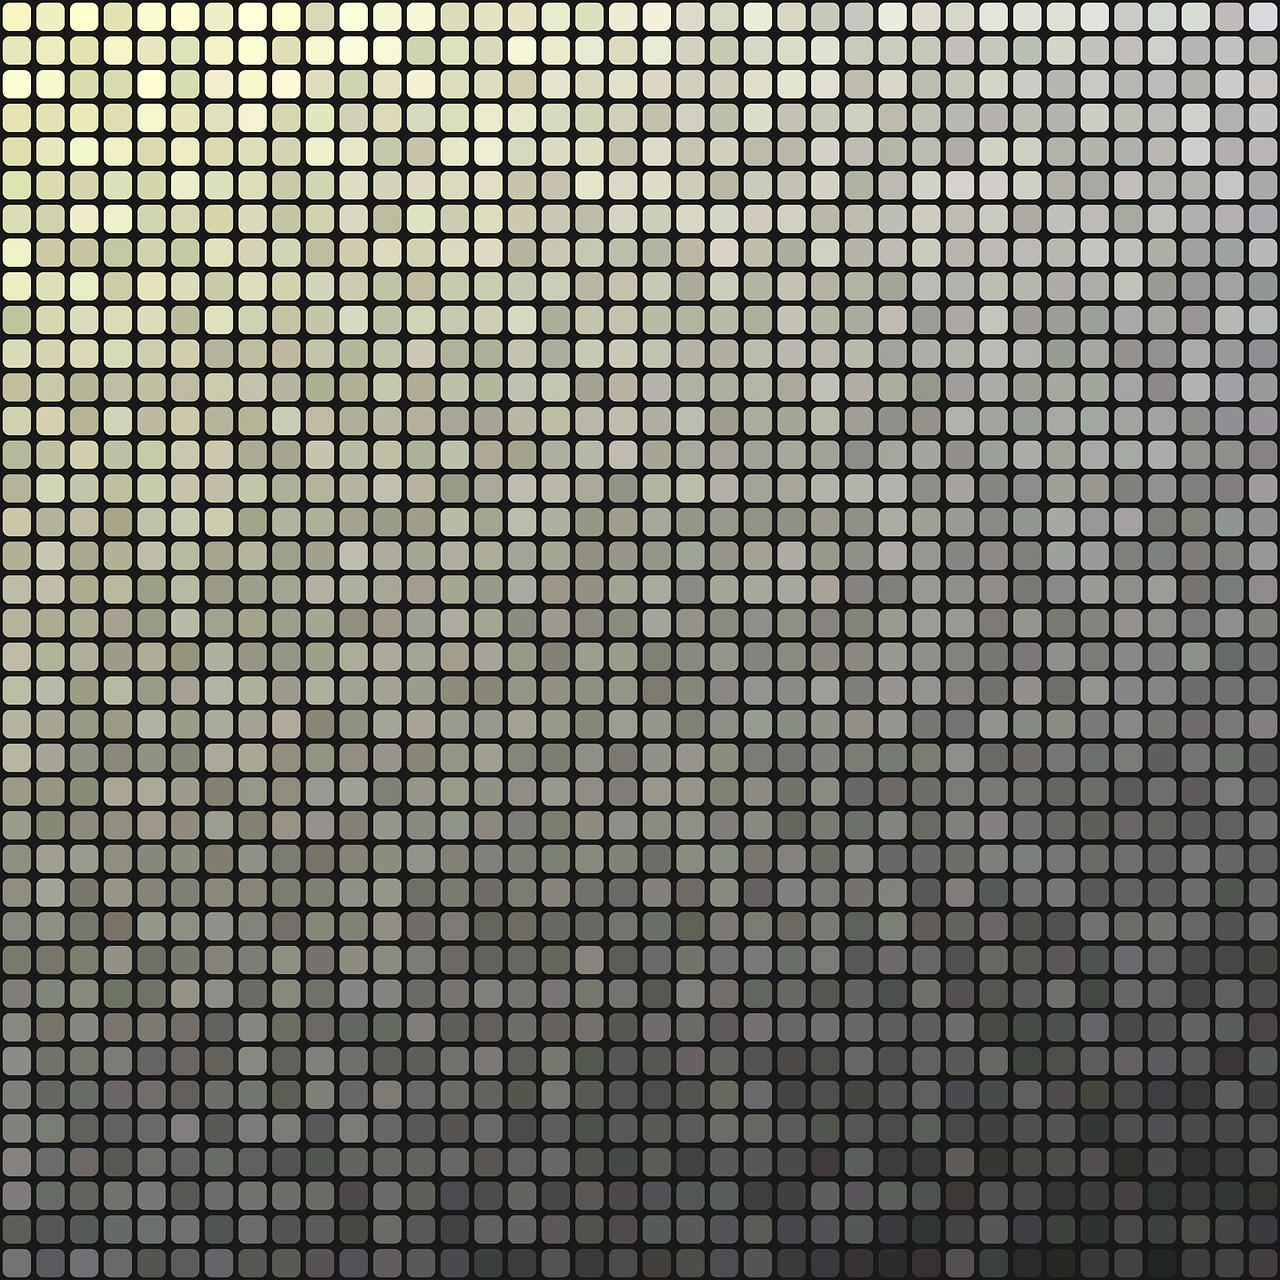 pixel pattern wallpaper free photo